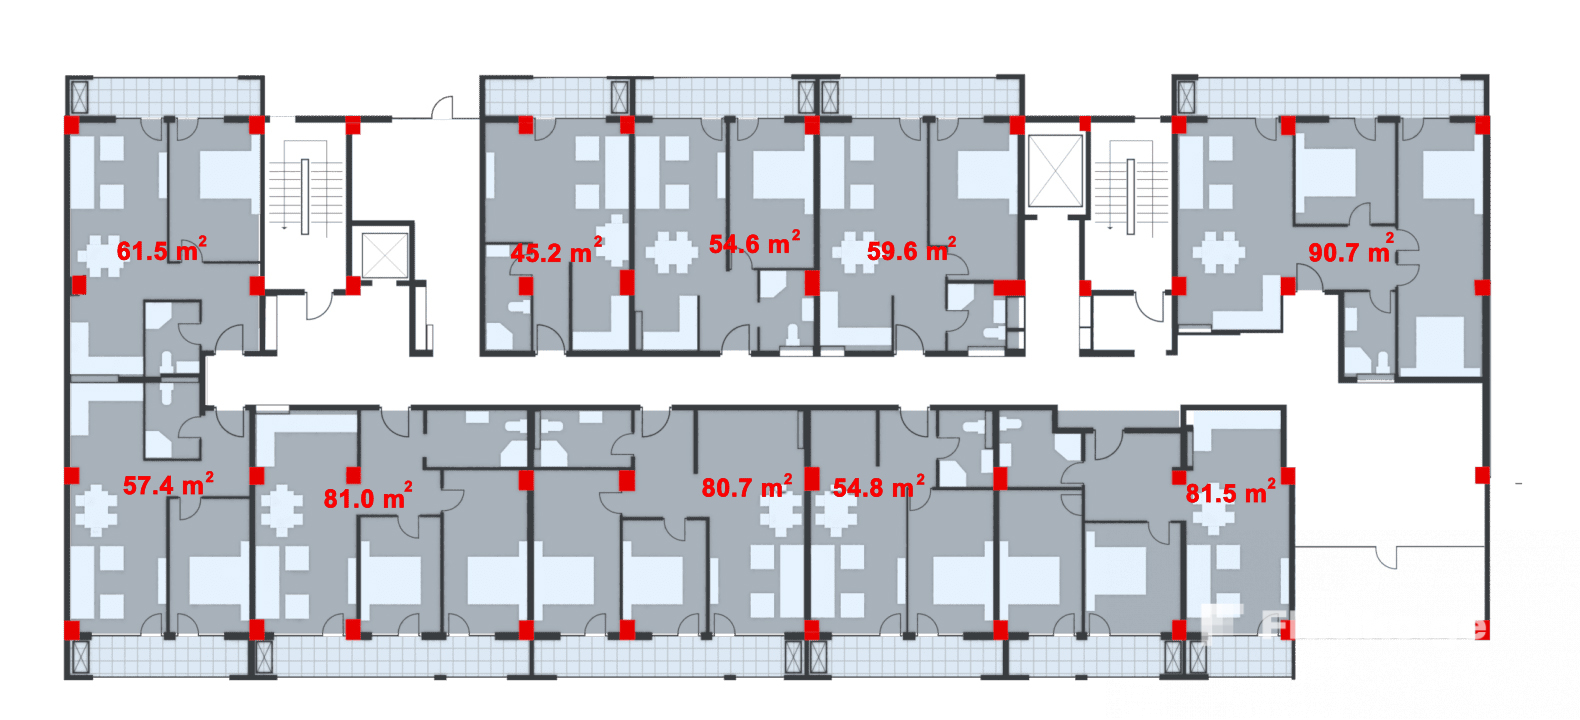 Floor Plan 1, Block B